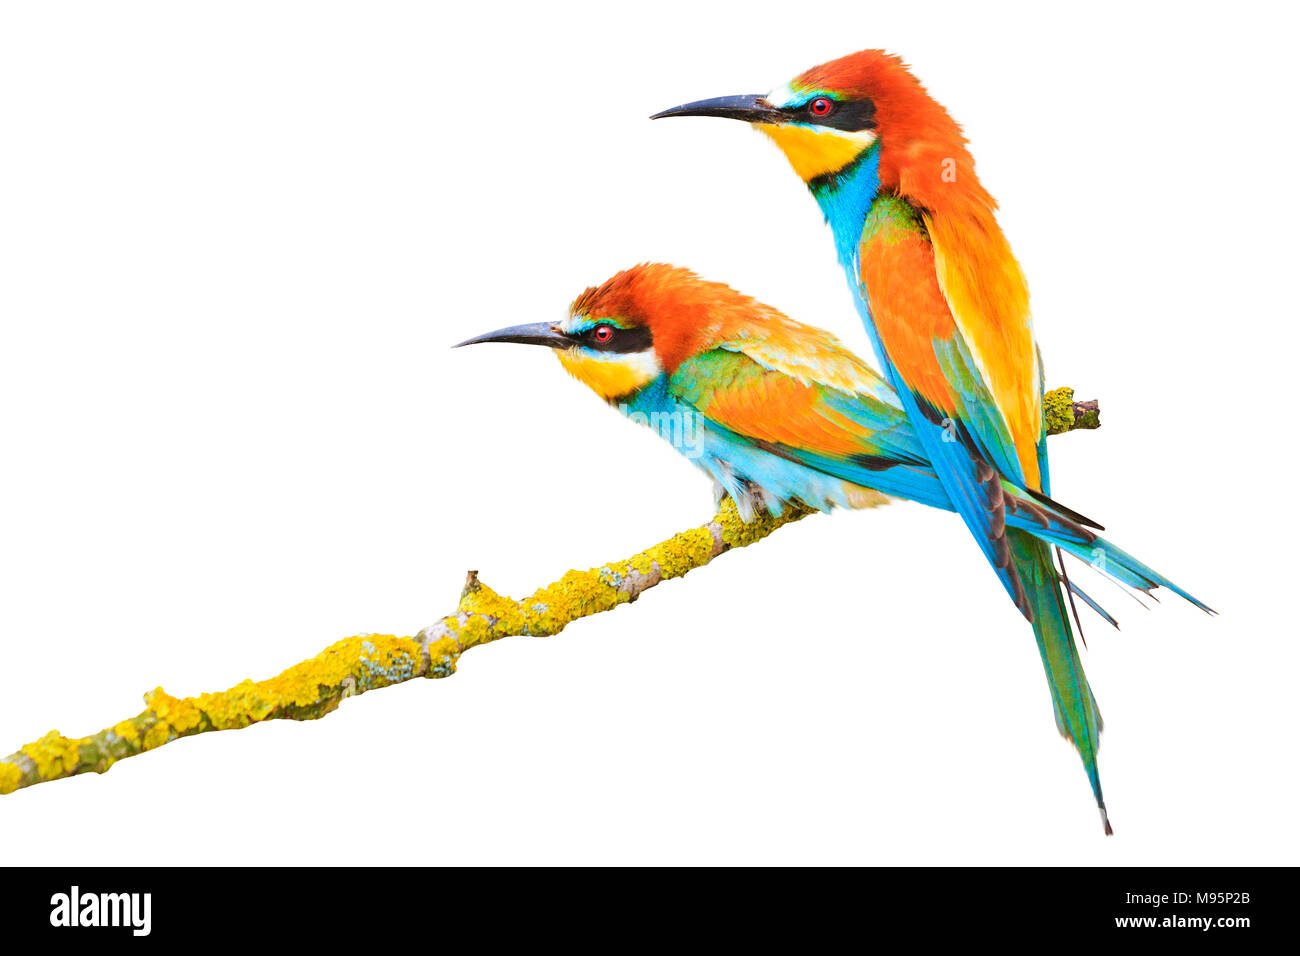 Couple d'oiseaux incroyablement beau isolé sur un fond blanc, bee-eater, des oiseaux colorés, la conception et l'impression Banque D'Images